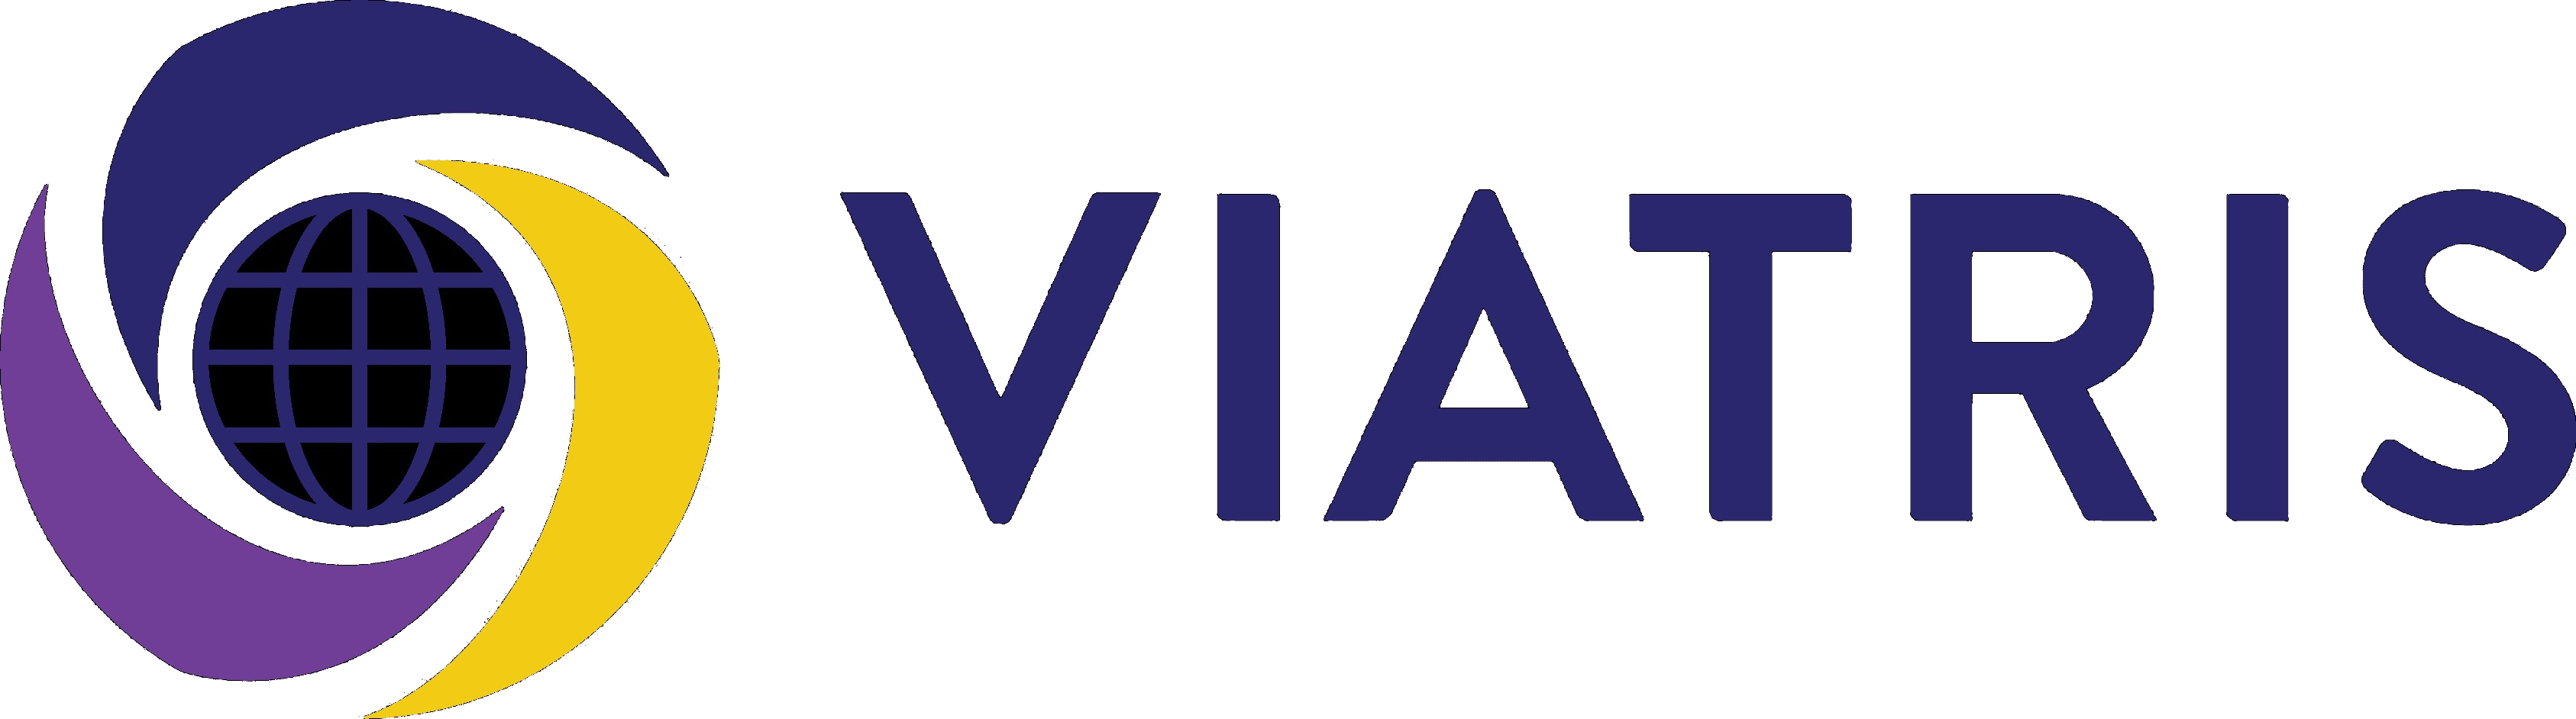 Viatris logó